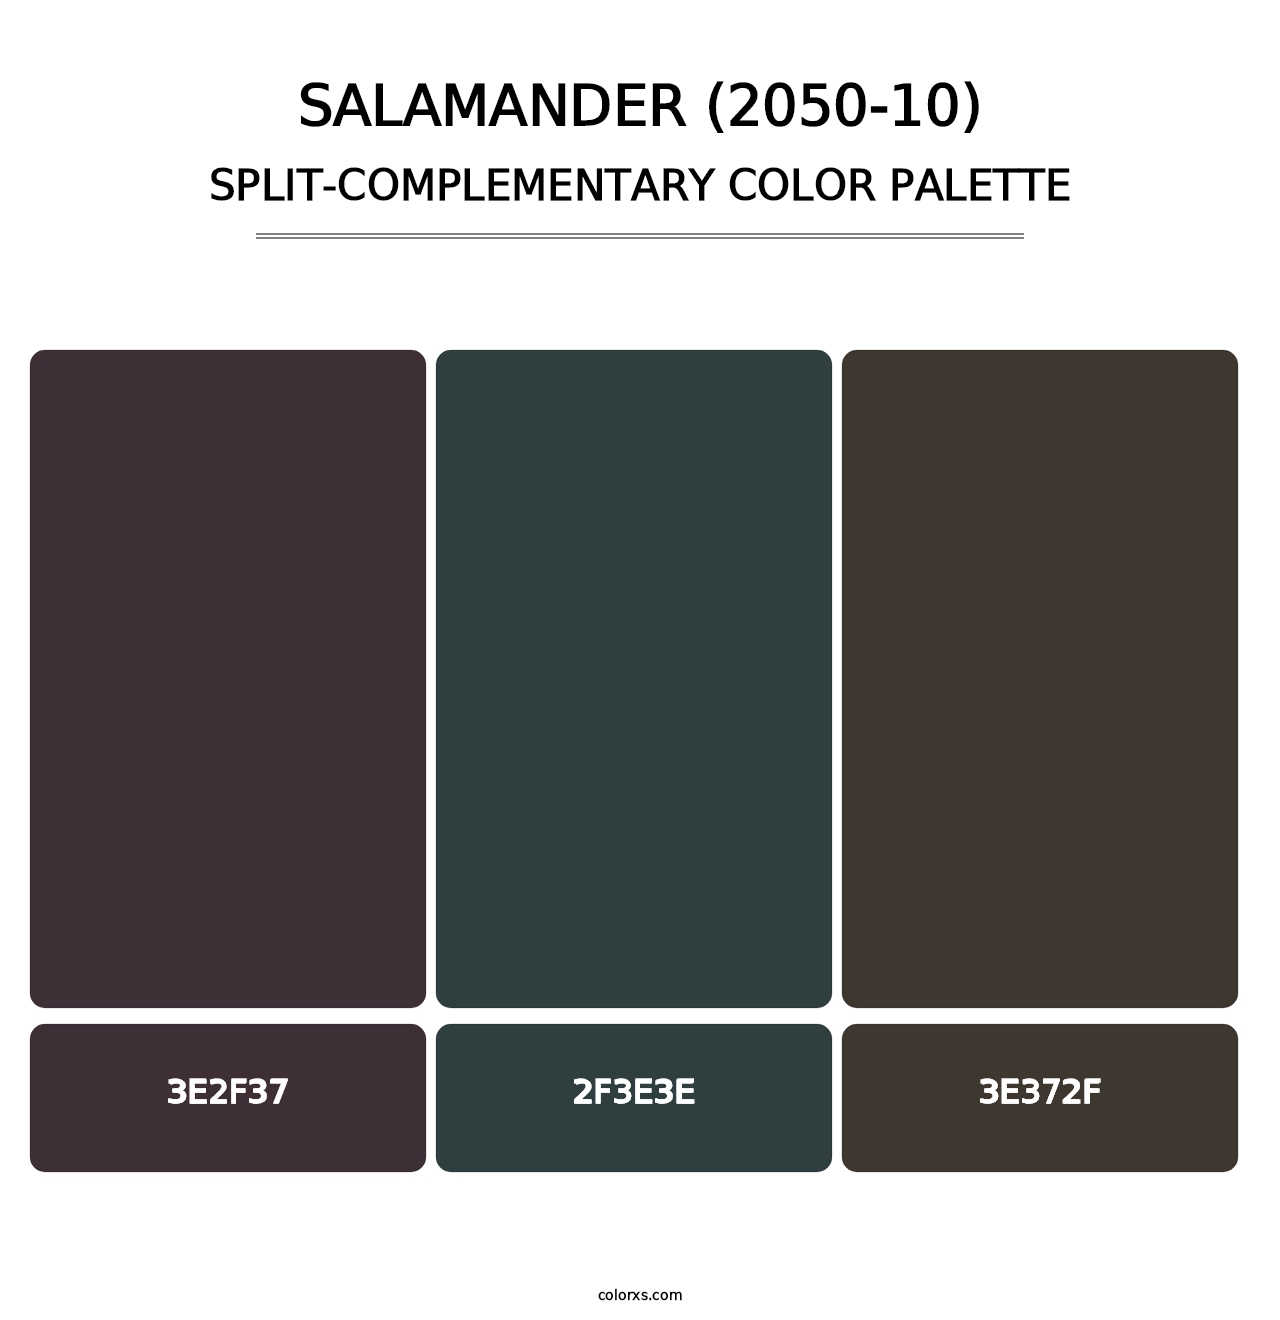 Salamander (2050-10) - Split-Complementary Color Palette